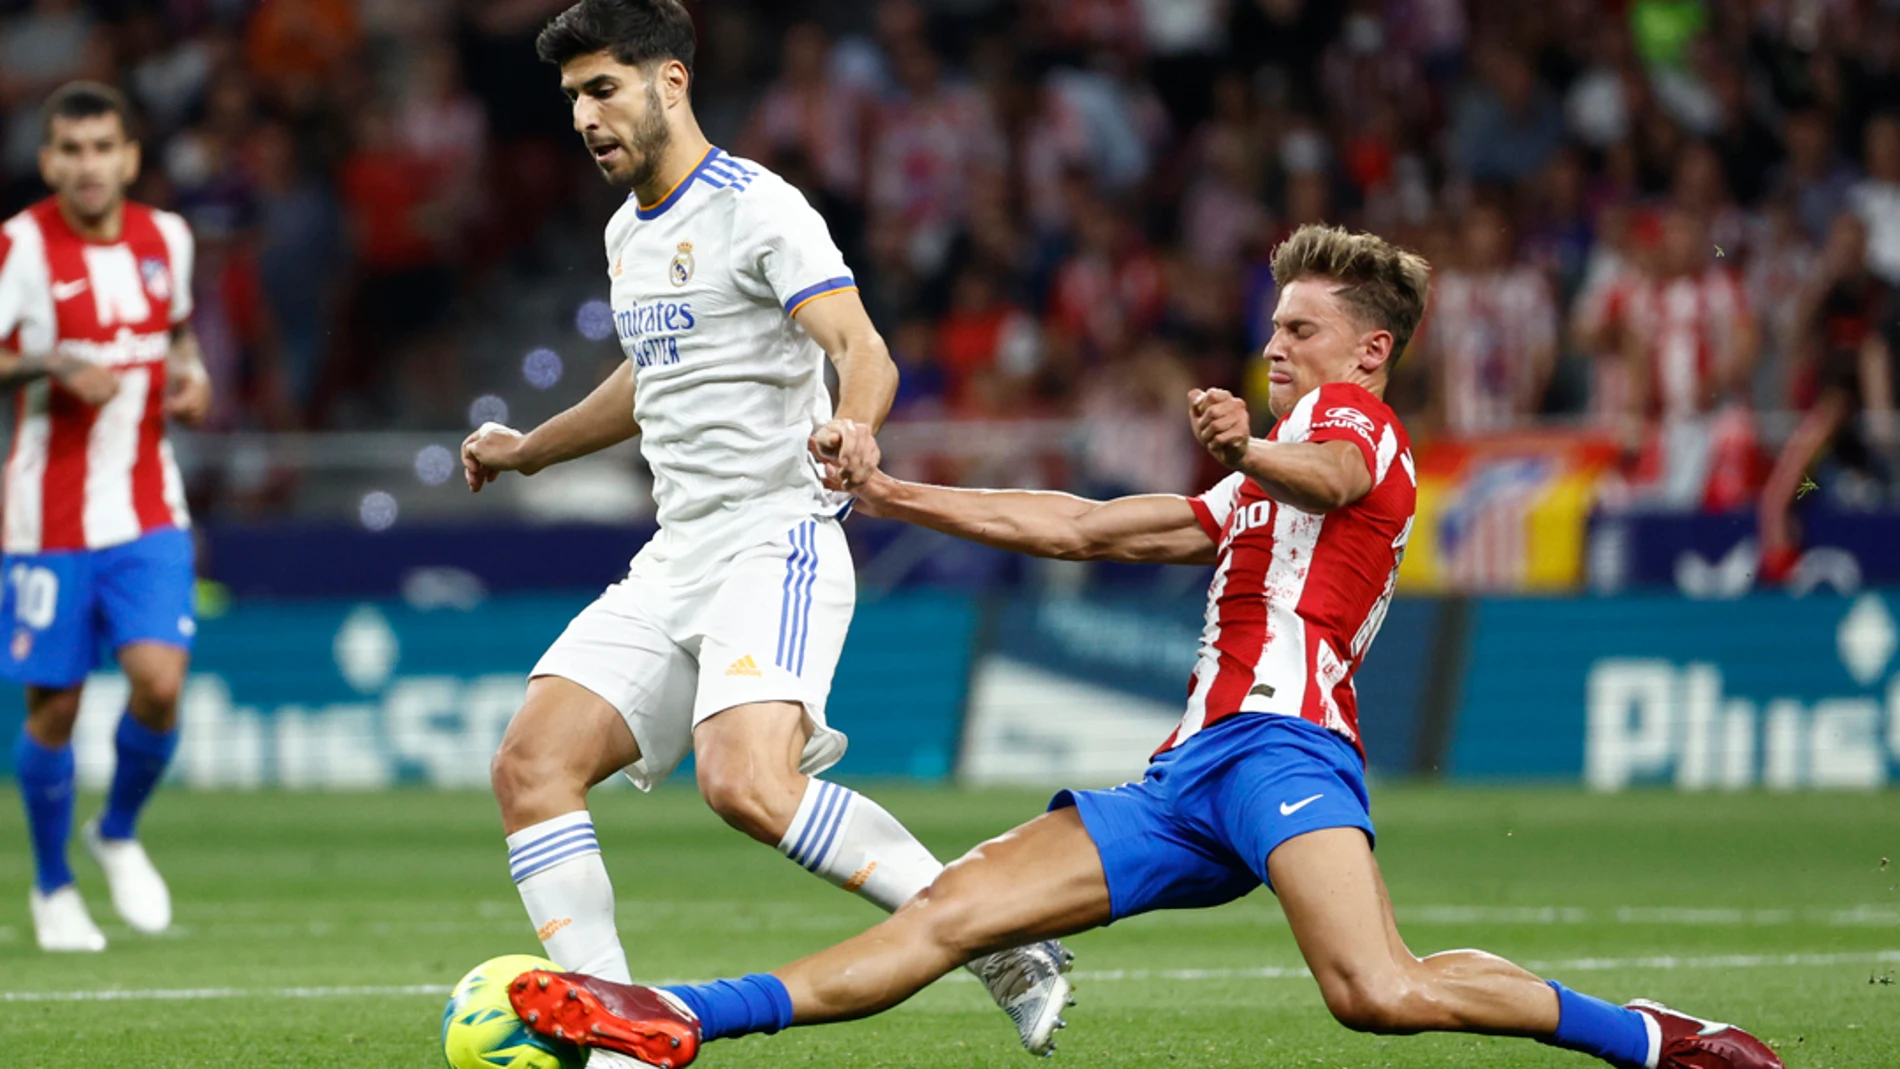 Atlético de Madrid - Real Madrid: Resultado, resumen y goles de LaLiga Santander, en directo (1-0)